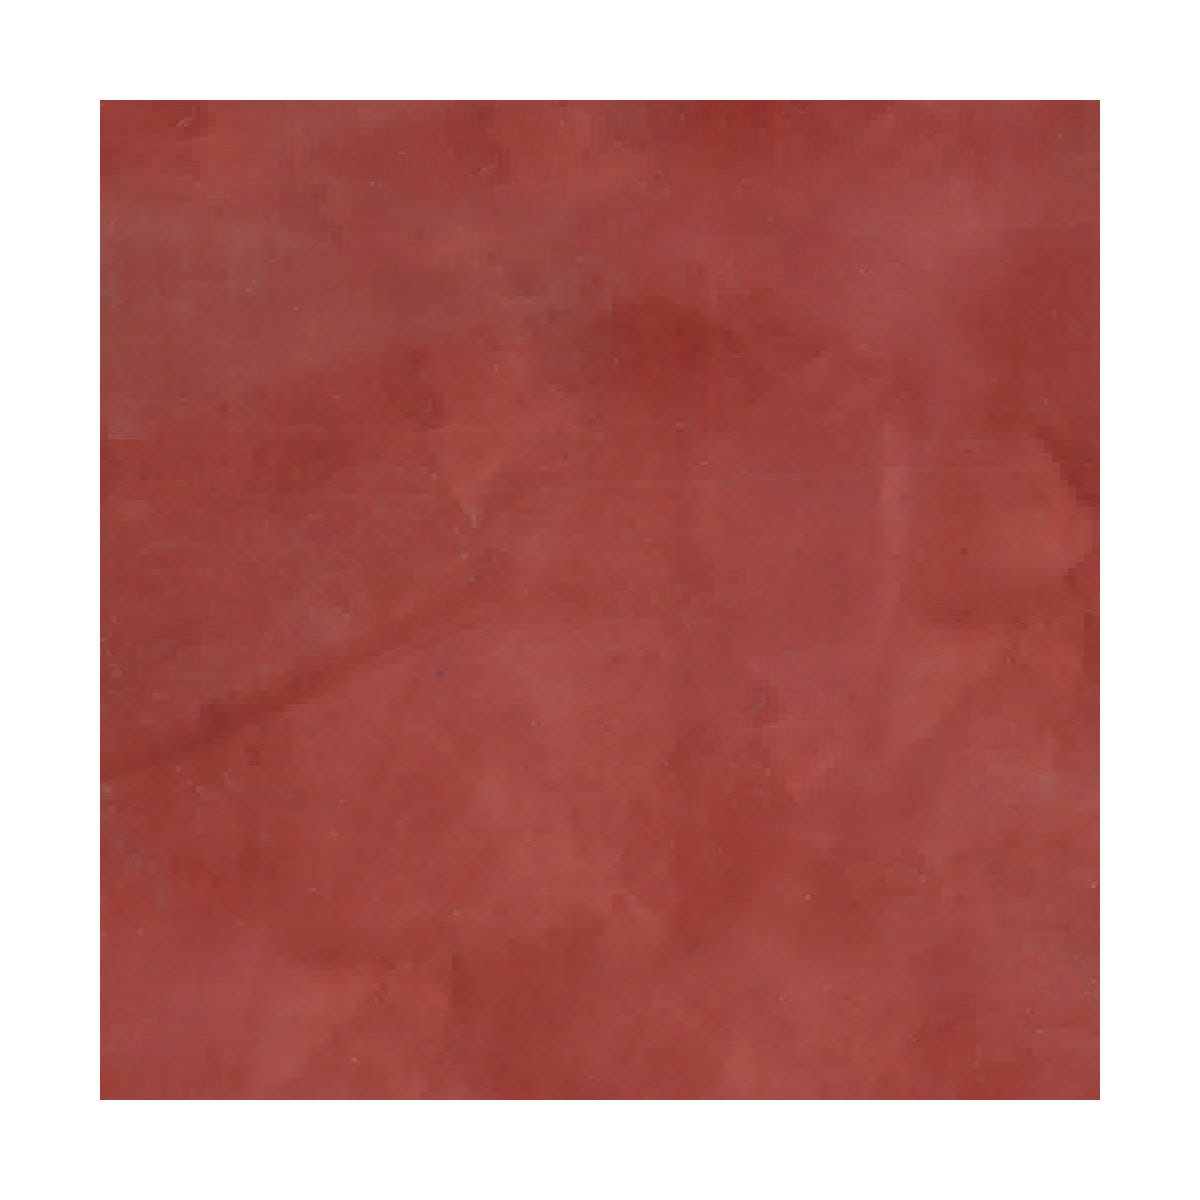 Mortier + teinte - stucco (sans primaire ni finition) - STUCCOLIS Mortier + teinte Rouge Oriental - kit jusqu'à 7 m²ARCANE INDUSTRIES 3